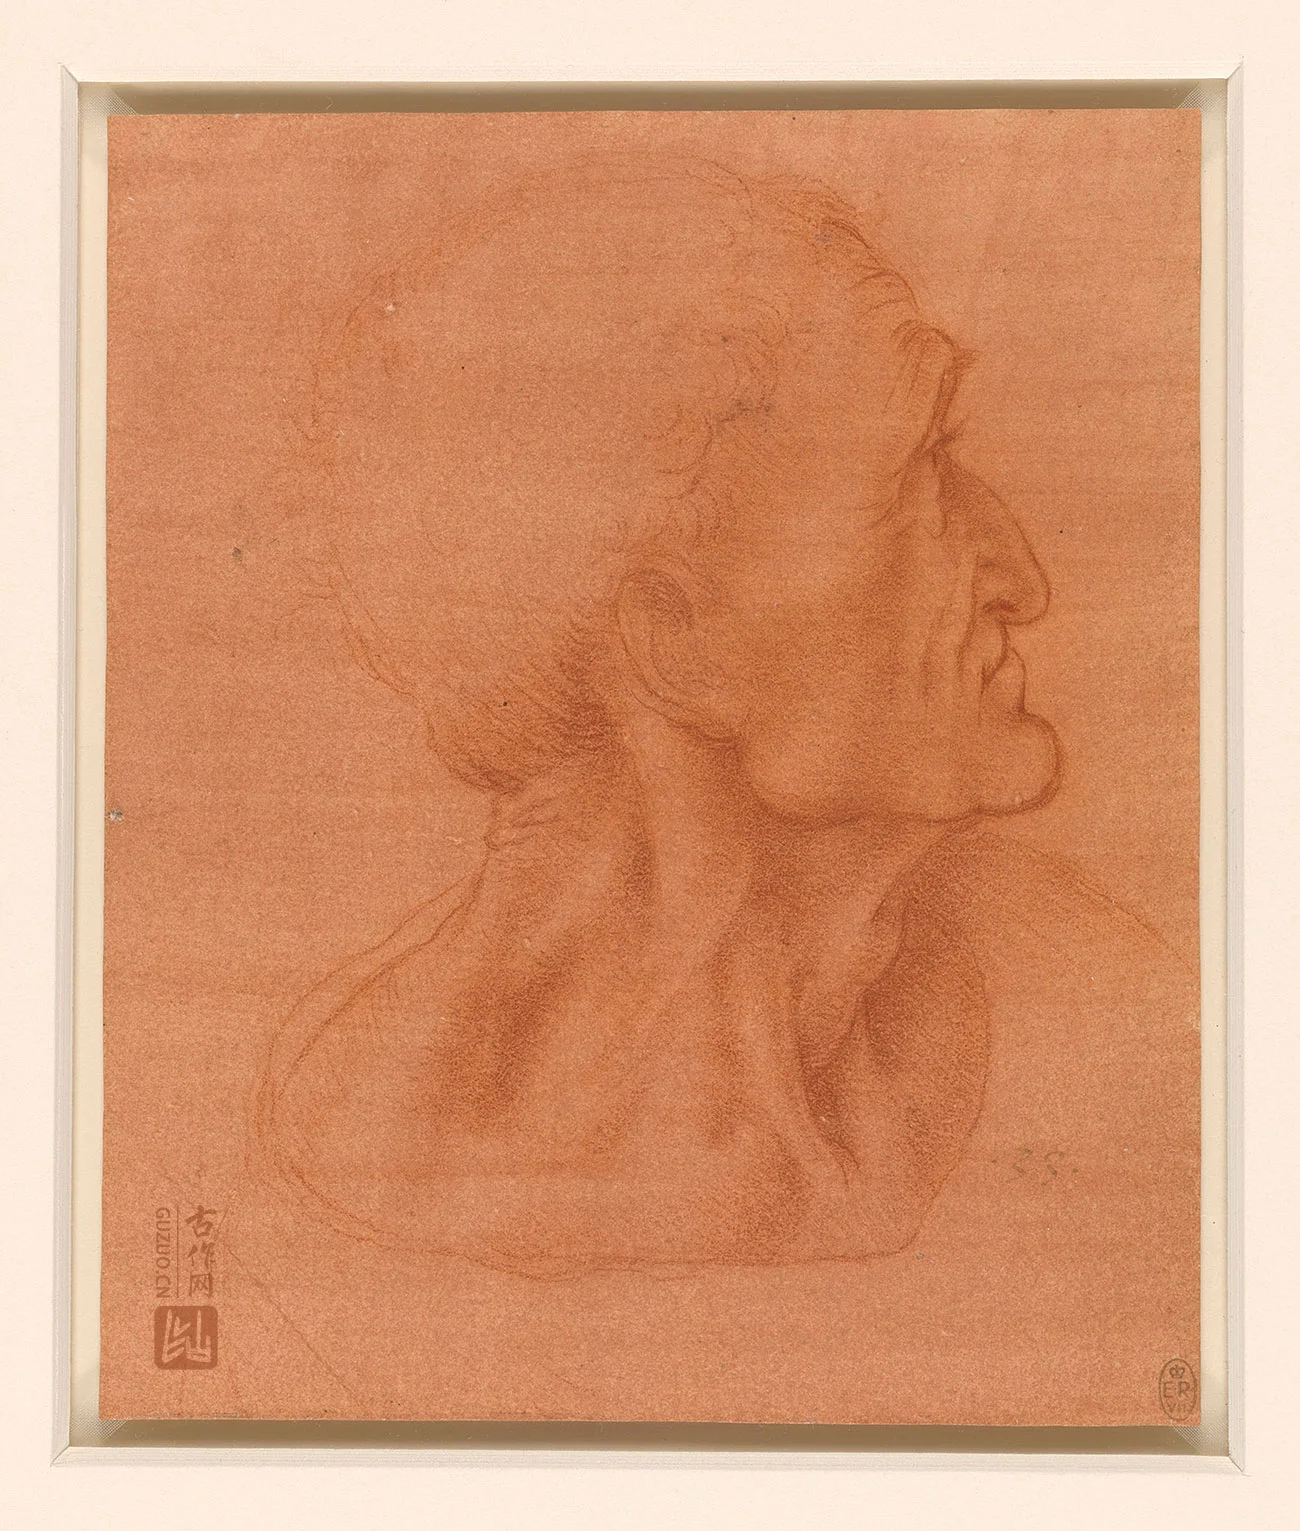 达·芬奇素描《犹大的头像》